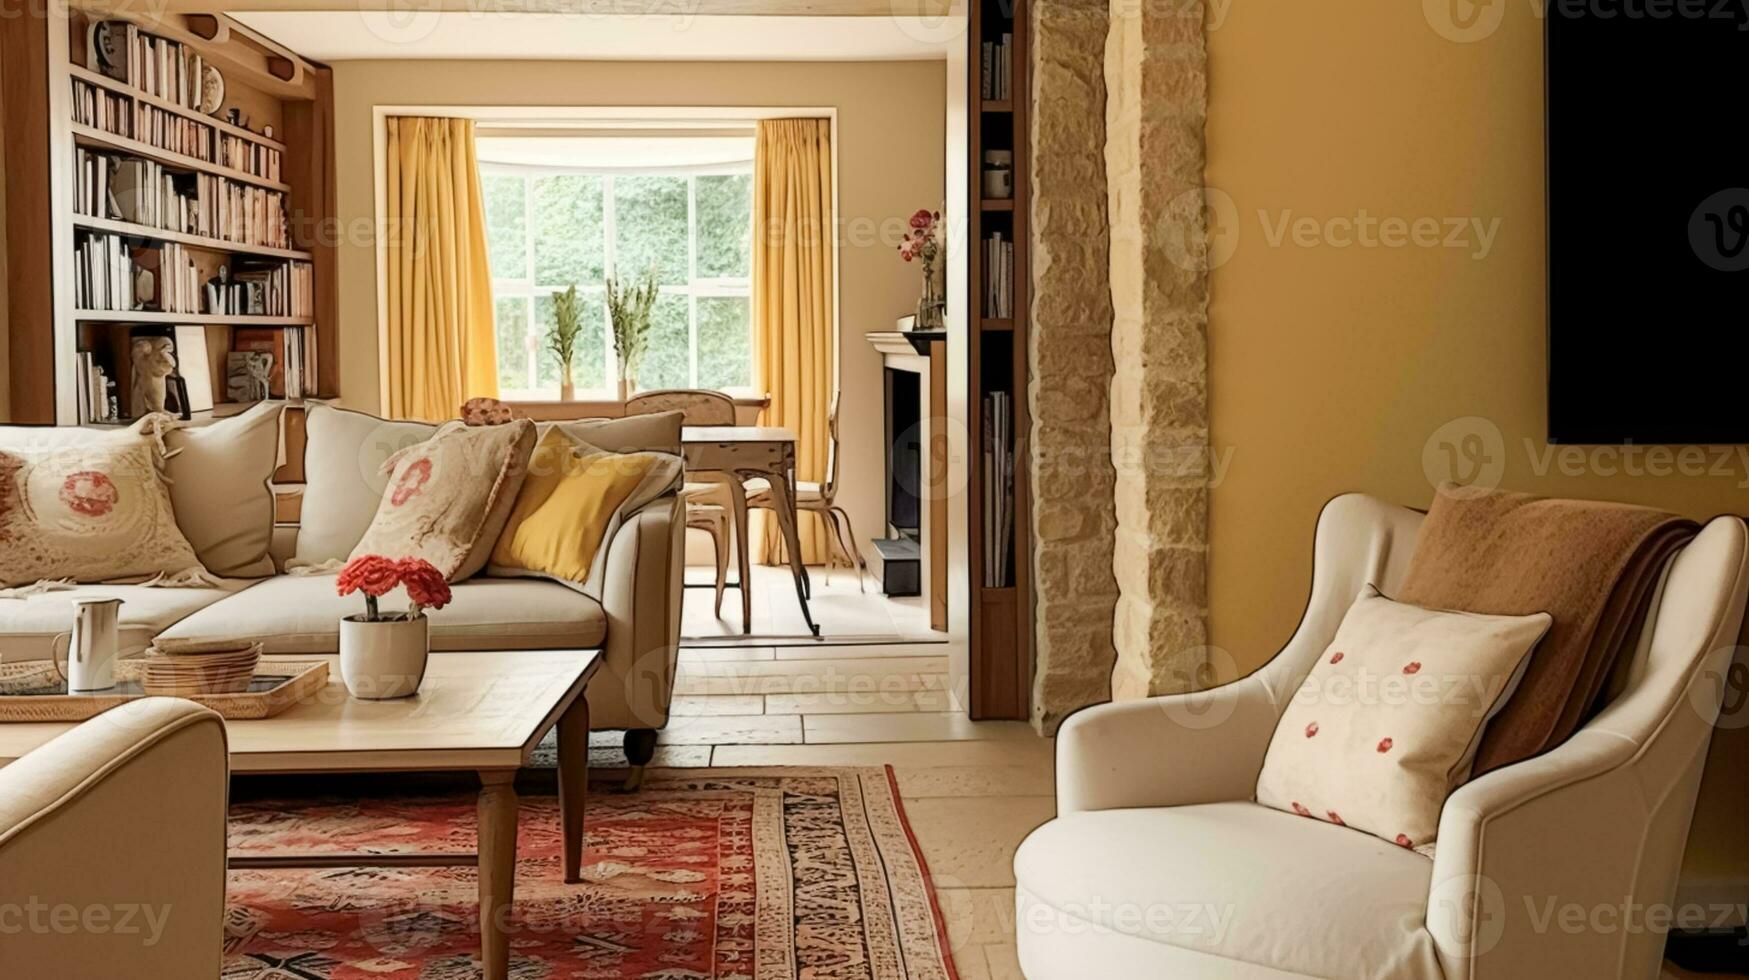 Jaune chalet séance chambre, vivant pièce intérieur conception et pays maison Accueil décor, canapé et salon meubles, Anglais campagne style photo